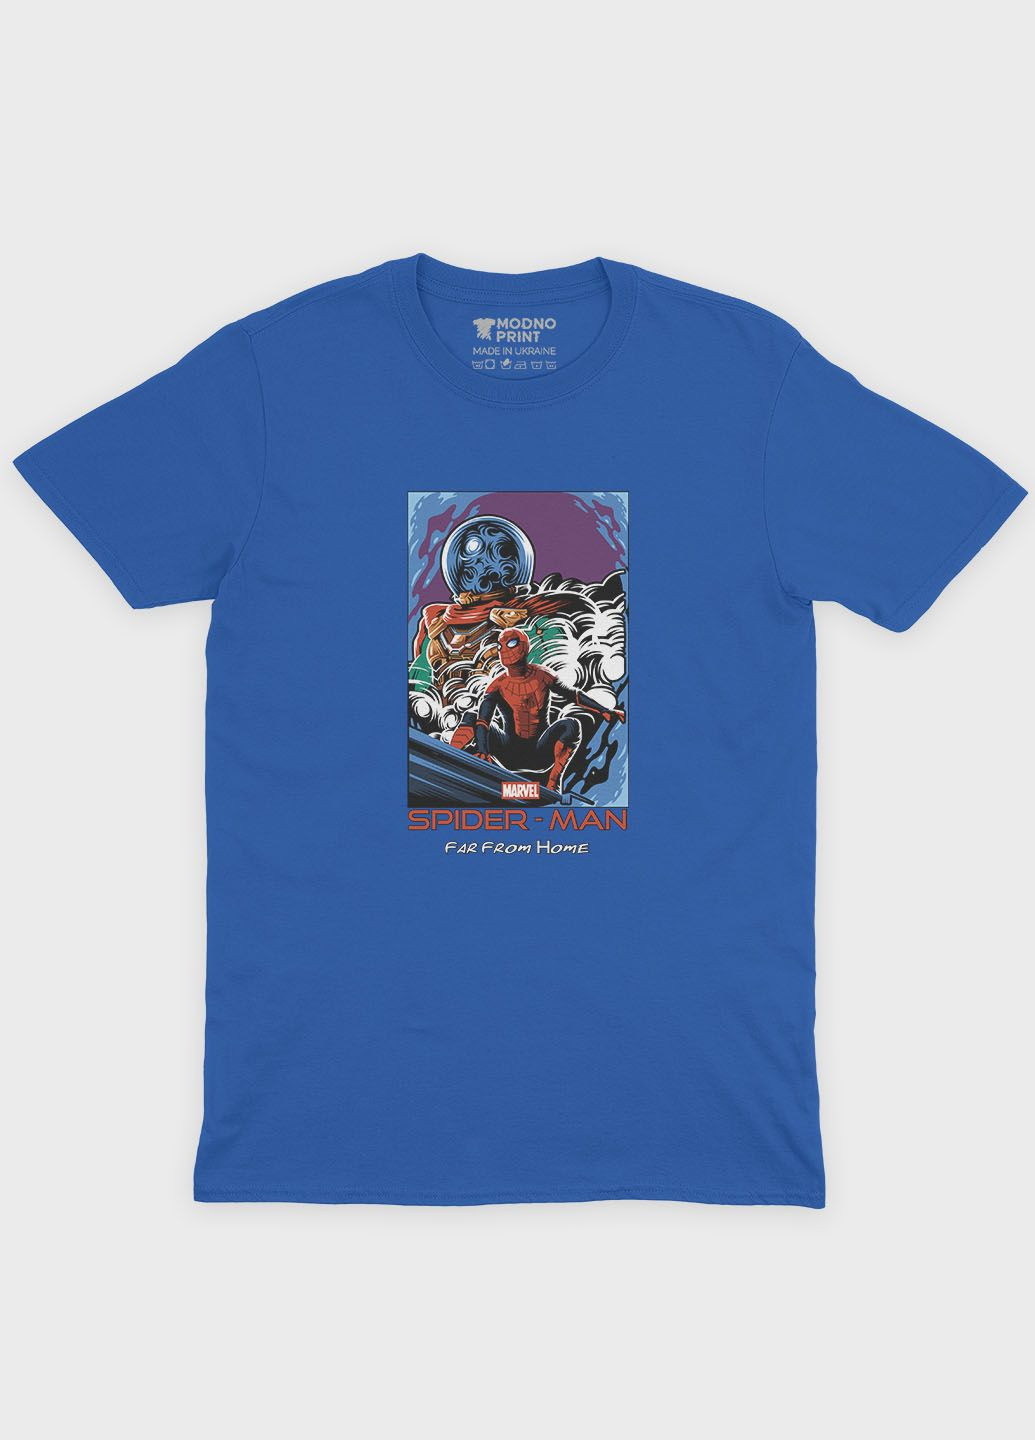 Синяя демисезонная футболка для мальчика с принтом супергероя - человек-паук (ts001-1-brr-006-014-036-b) Modno